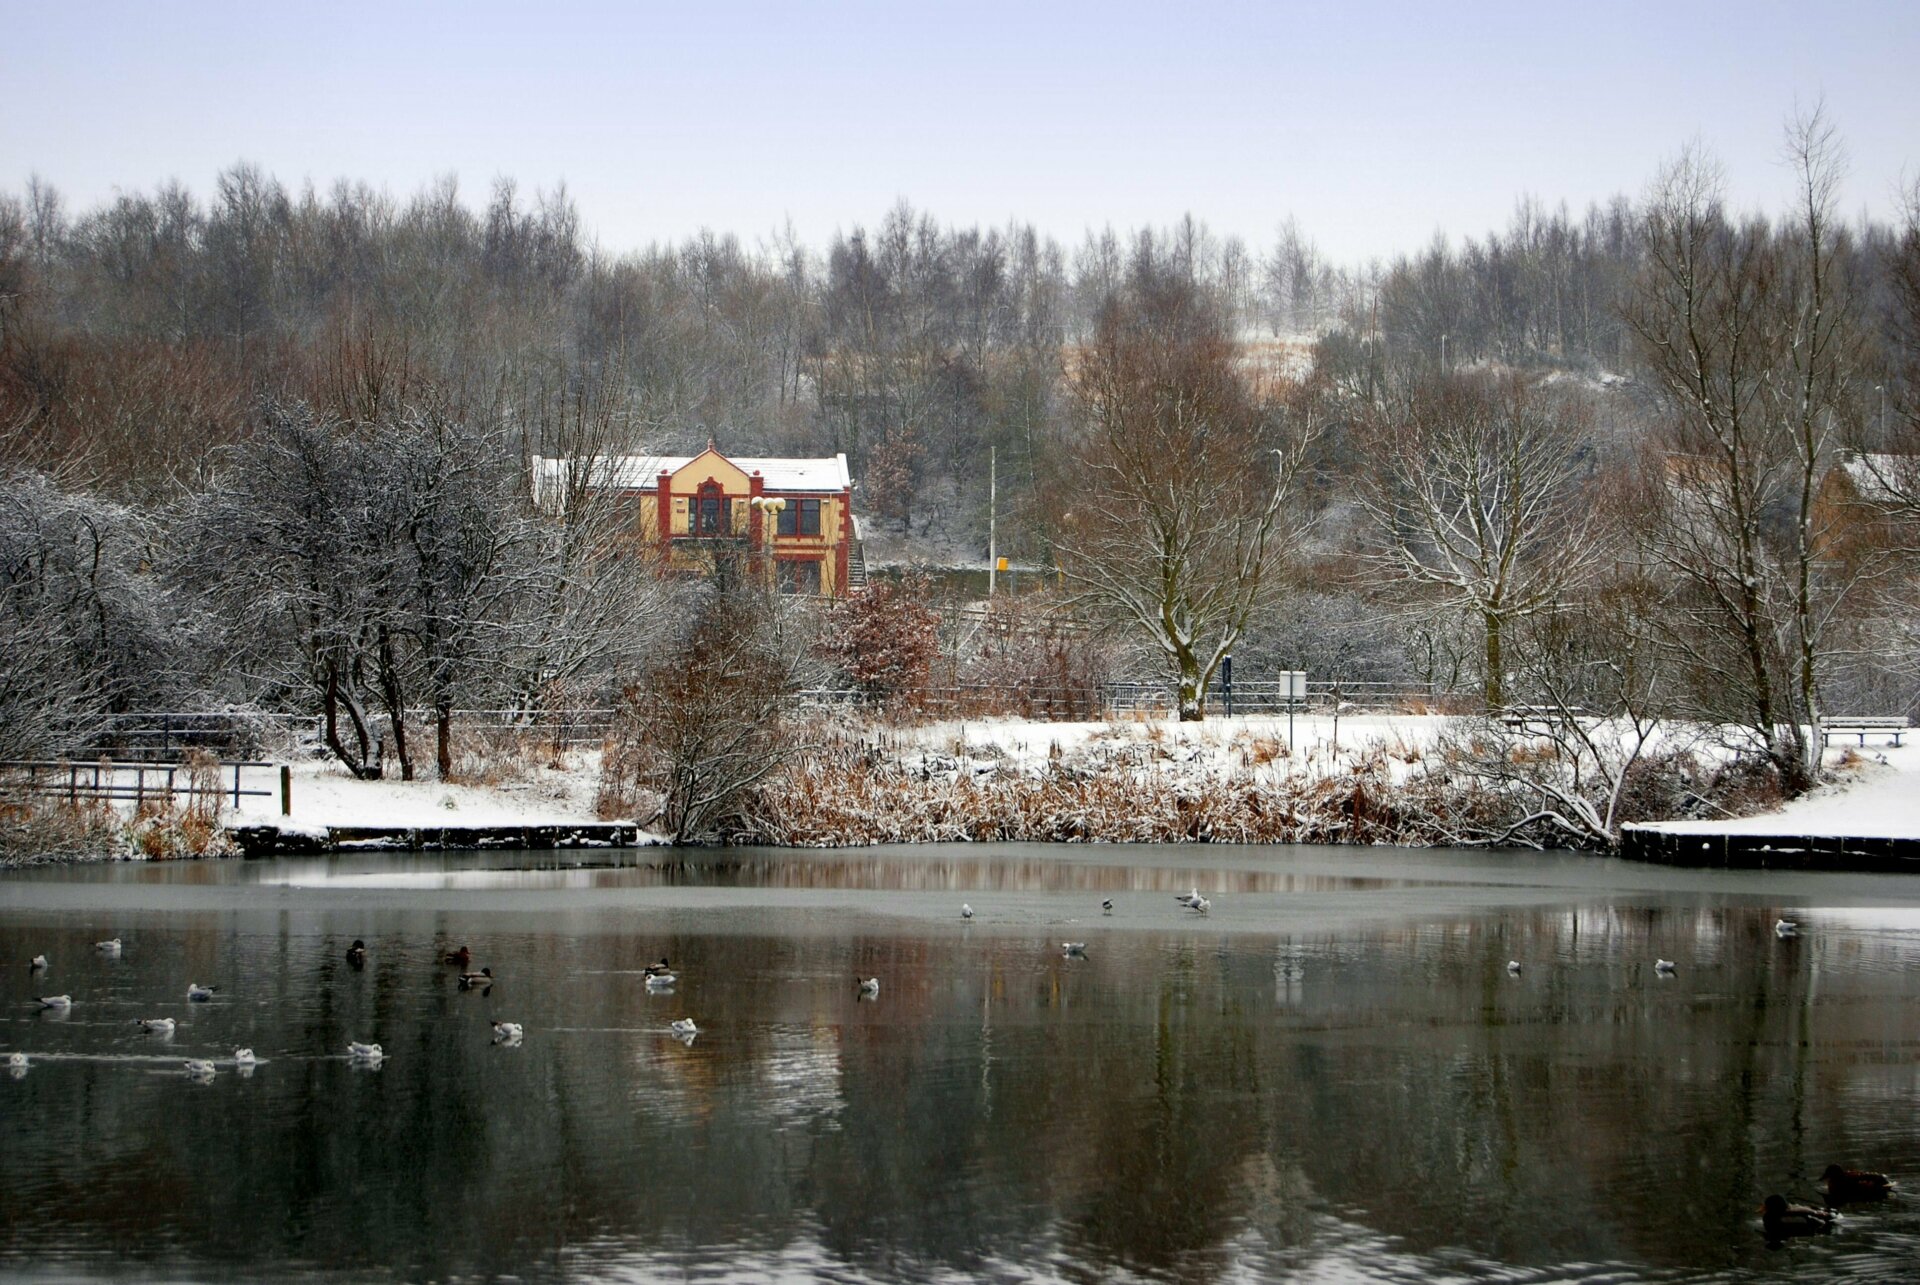 Winter in Dearne Valley Park